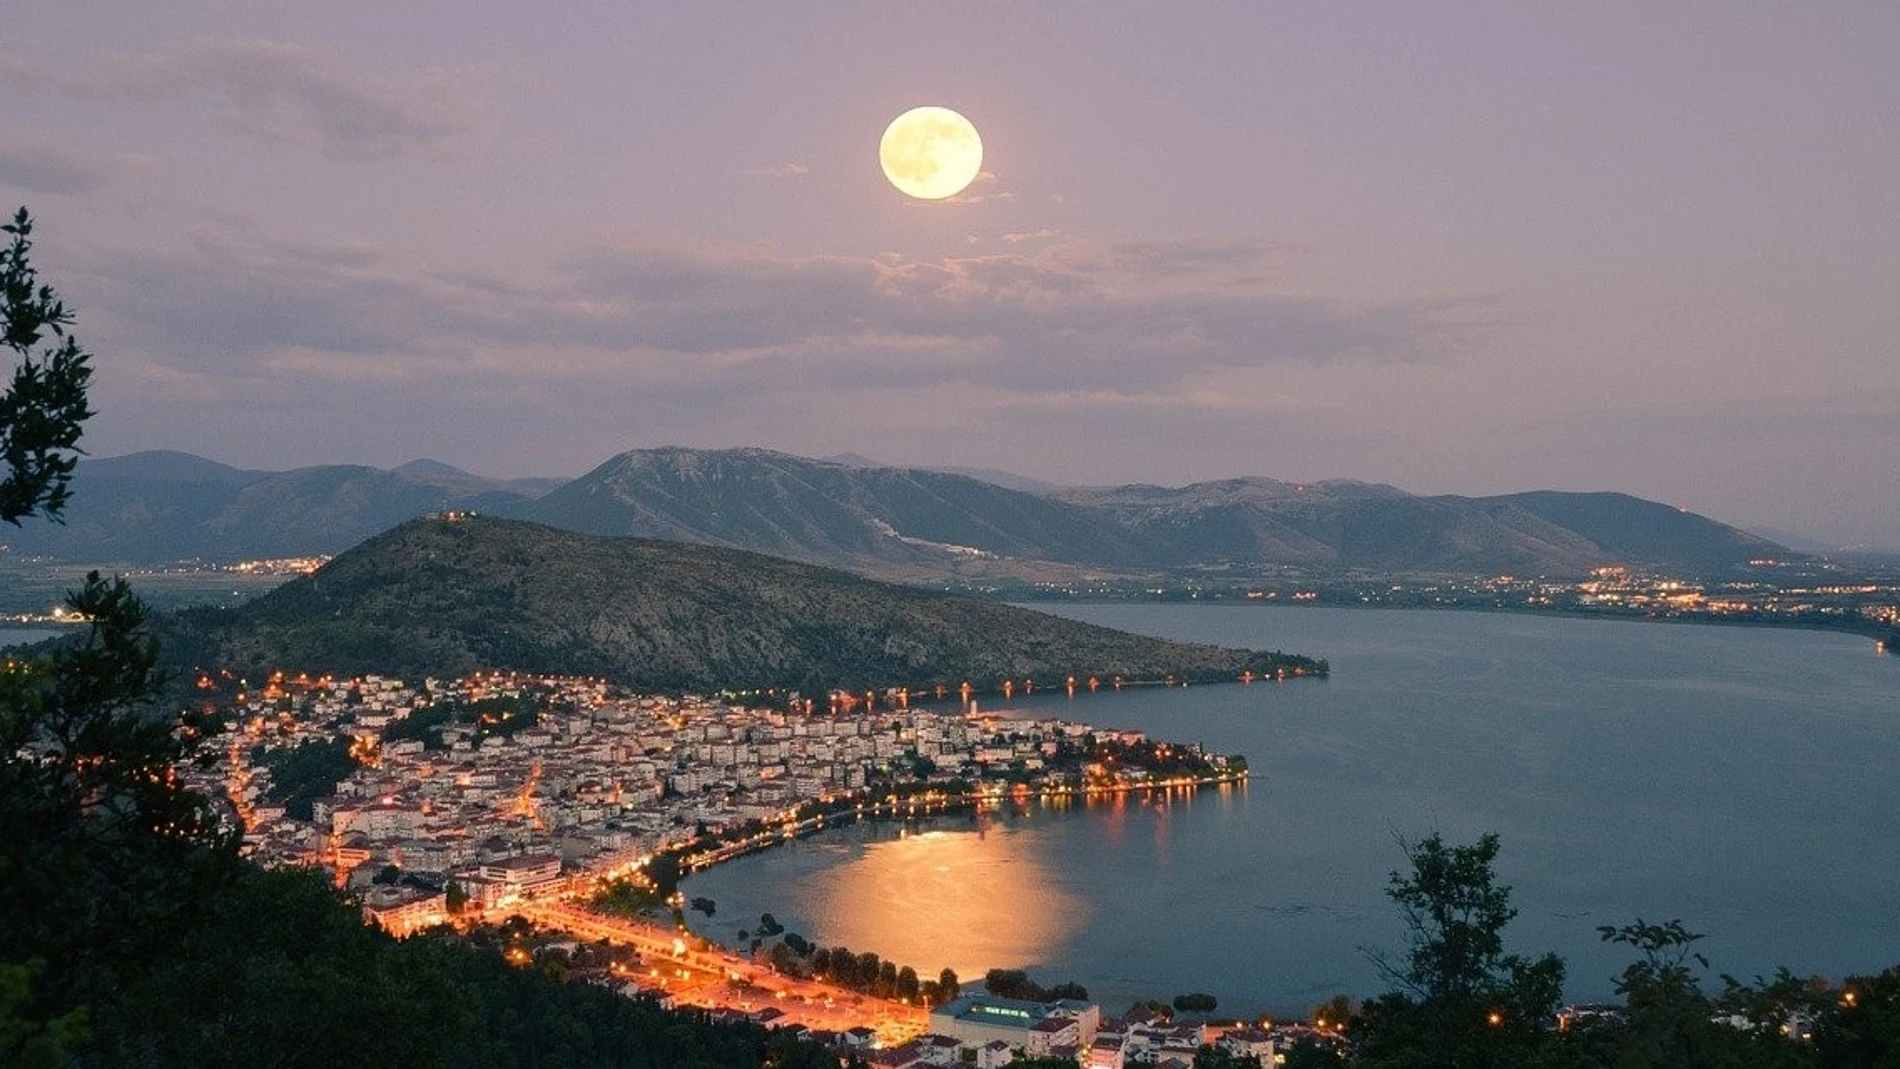 Grecia es uno de los lugares más hermosos del mundo.